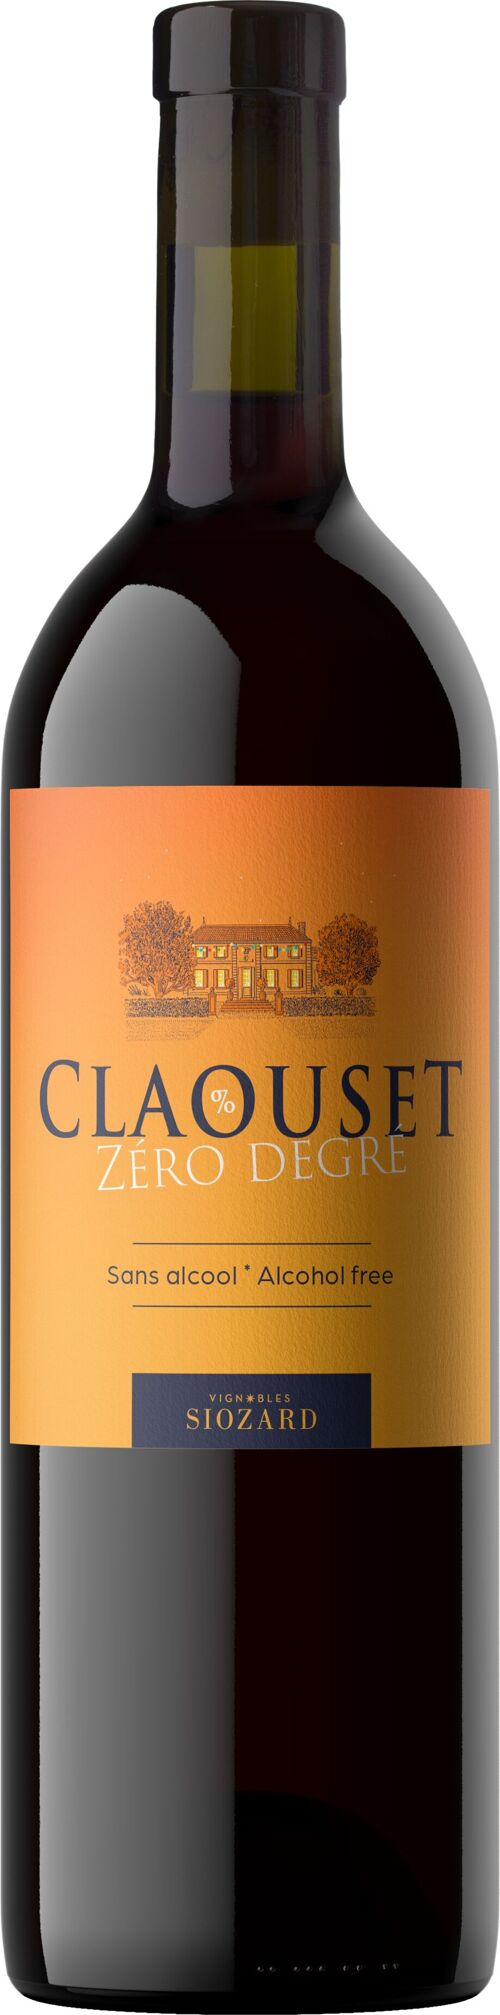 DEGRE ZERO by Claouset Rouge 0,0° - boisson à base de vin désalcoolisé